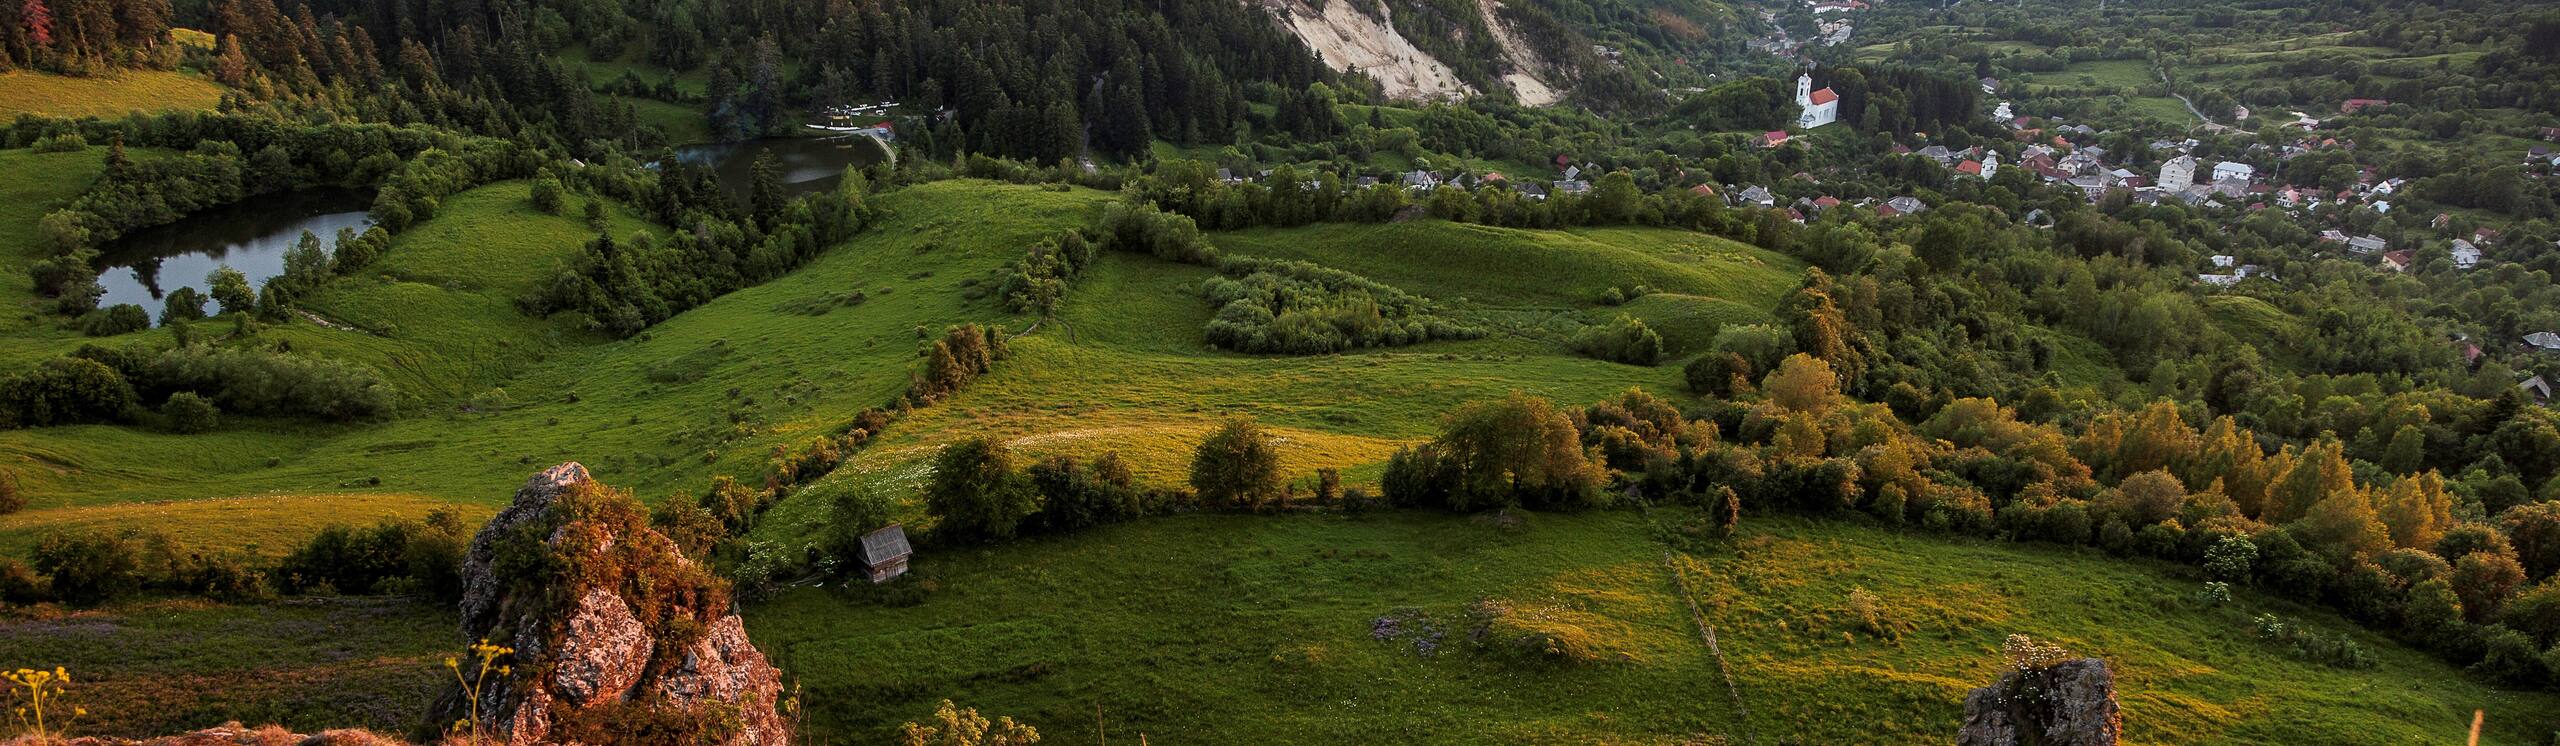 Roșia Montană Mining Landscape